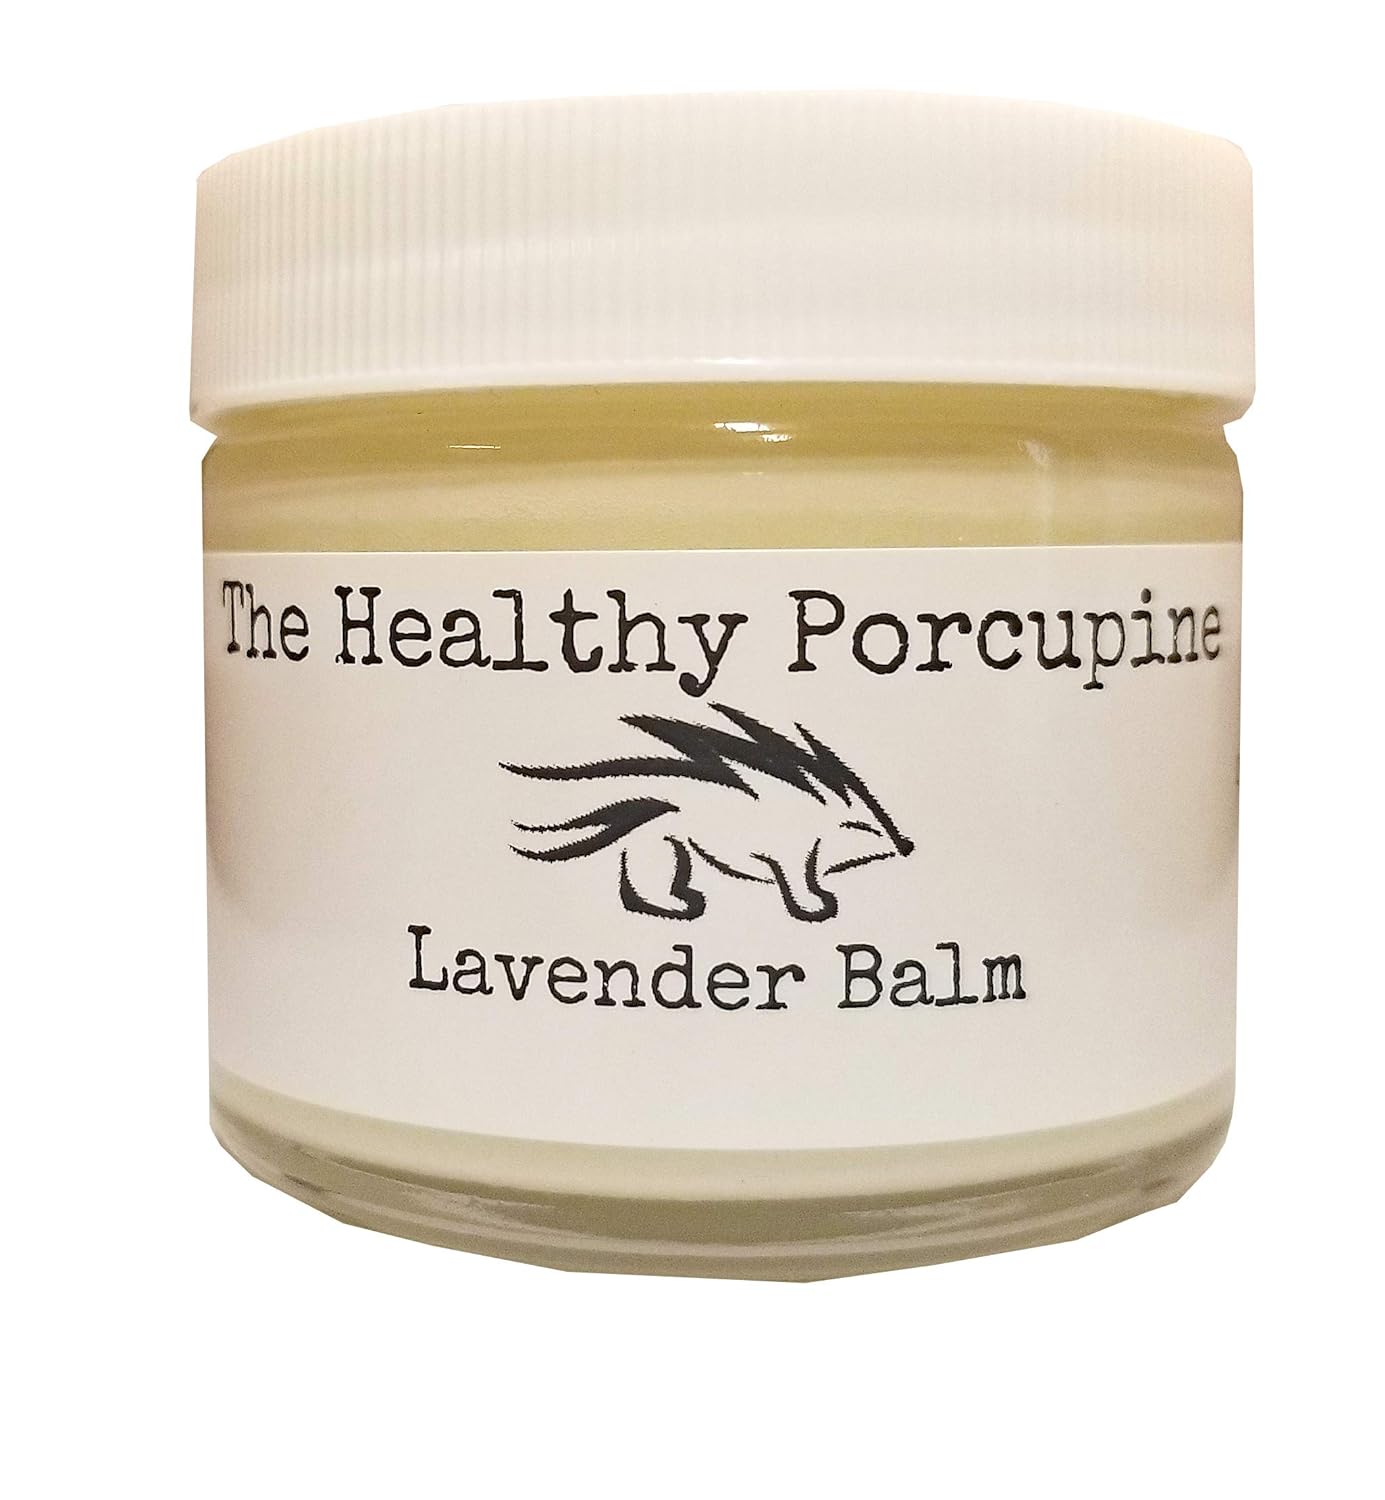 Esupli.com  The Healthy Porcupine Lavender Body Balm 2.0 